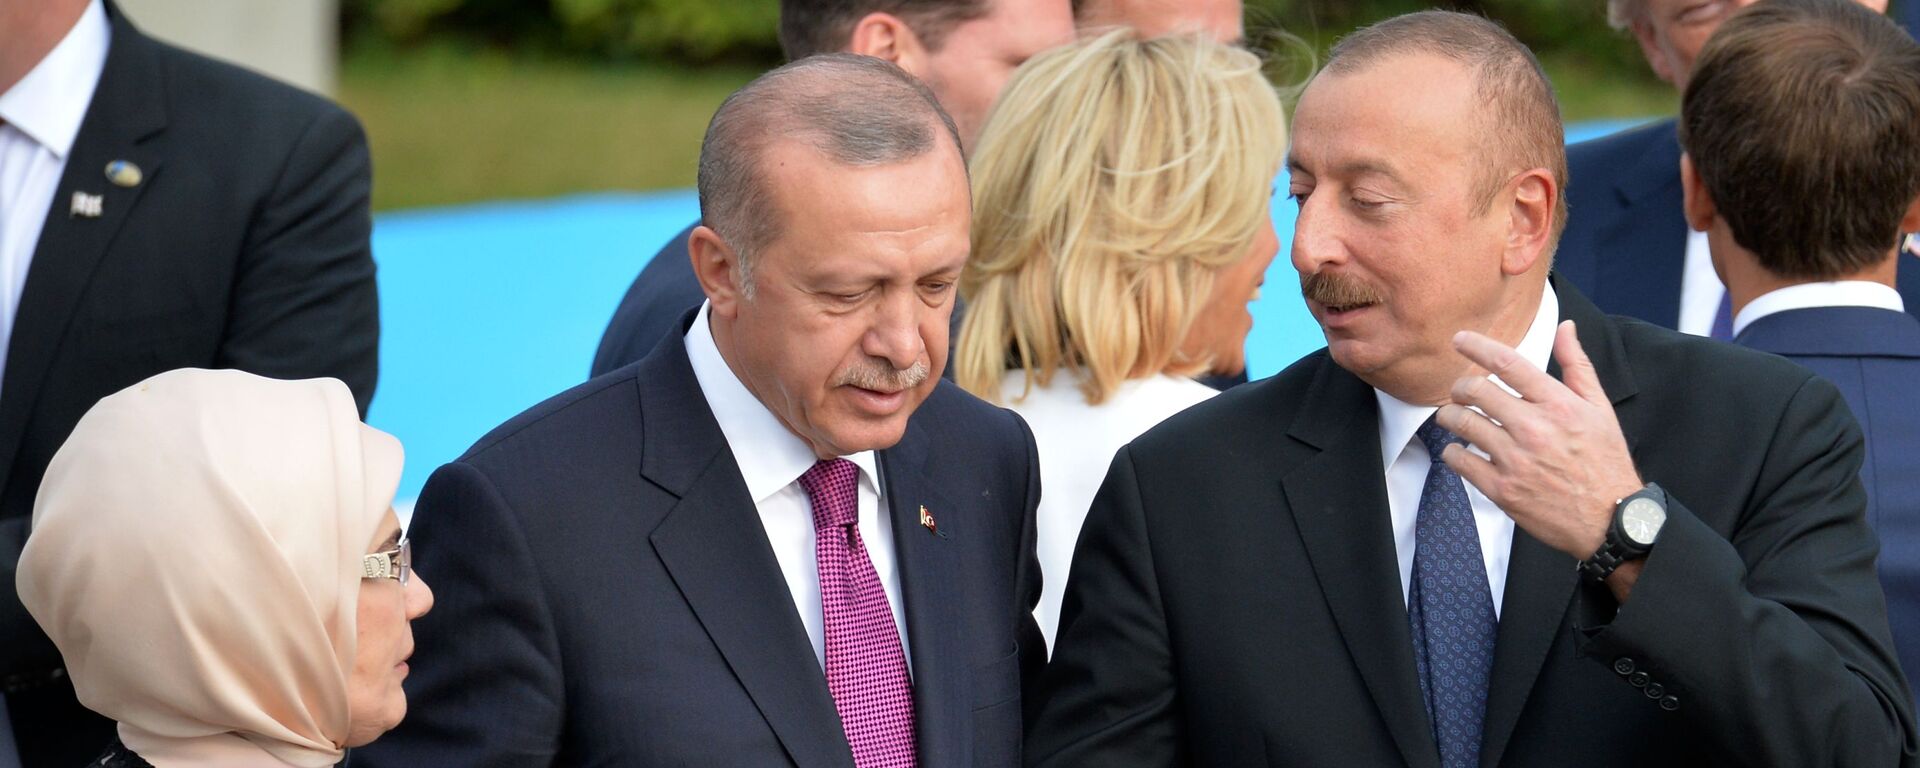 Президент Турции Реджеп Тайип Эрдоган и президент Азербайджана Ильхам Алиев (справа) на саммите НАТО в Брюсселе (11 июля 2018). - Sputnik Армения, 1920, 08.12.2020